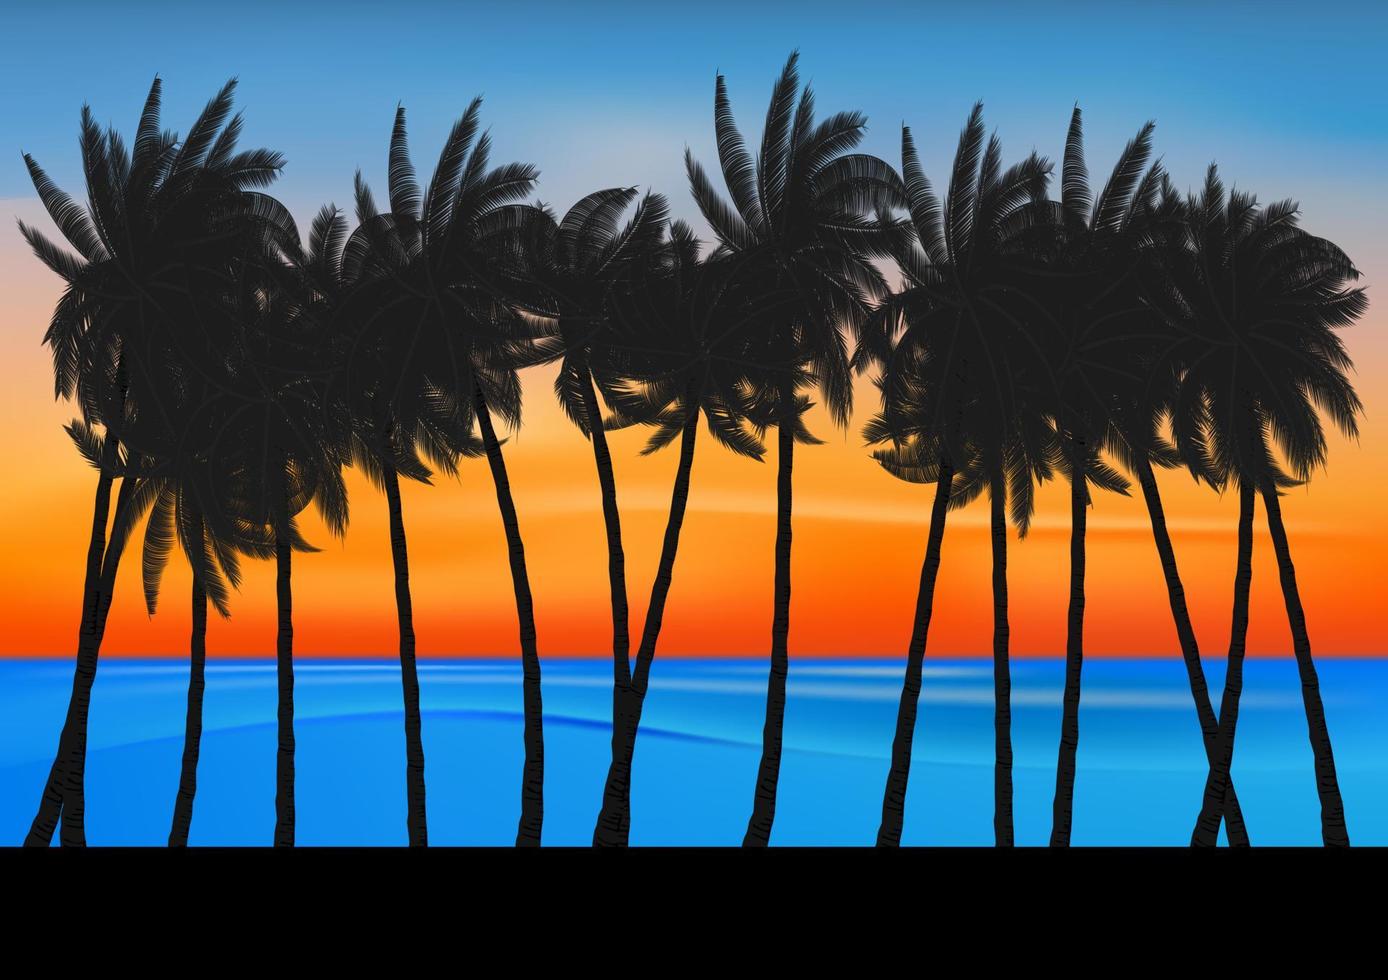 landskapsvy ritning havsnatur med palmträd och skymning efter solnedgång bakgrund vektorillustration vektor